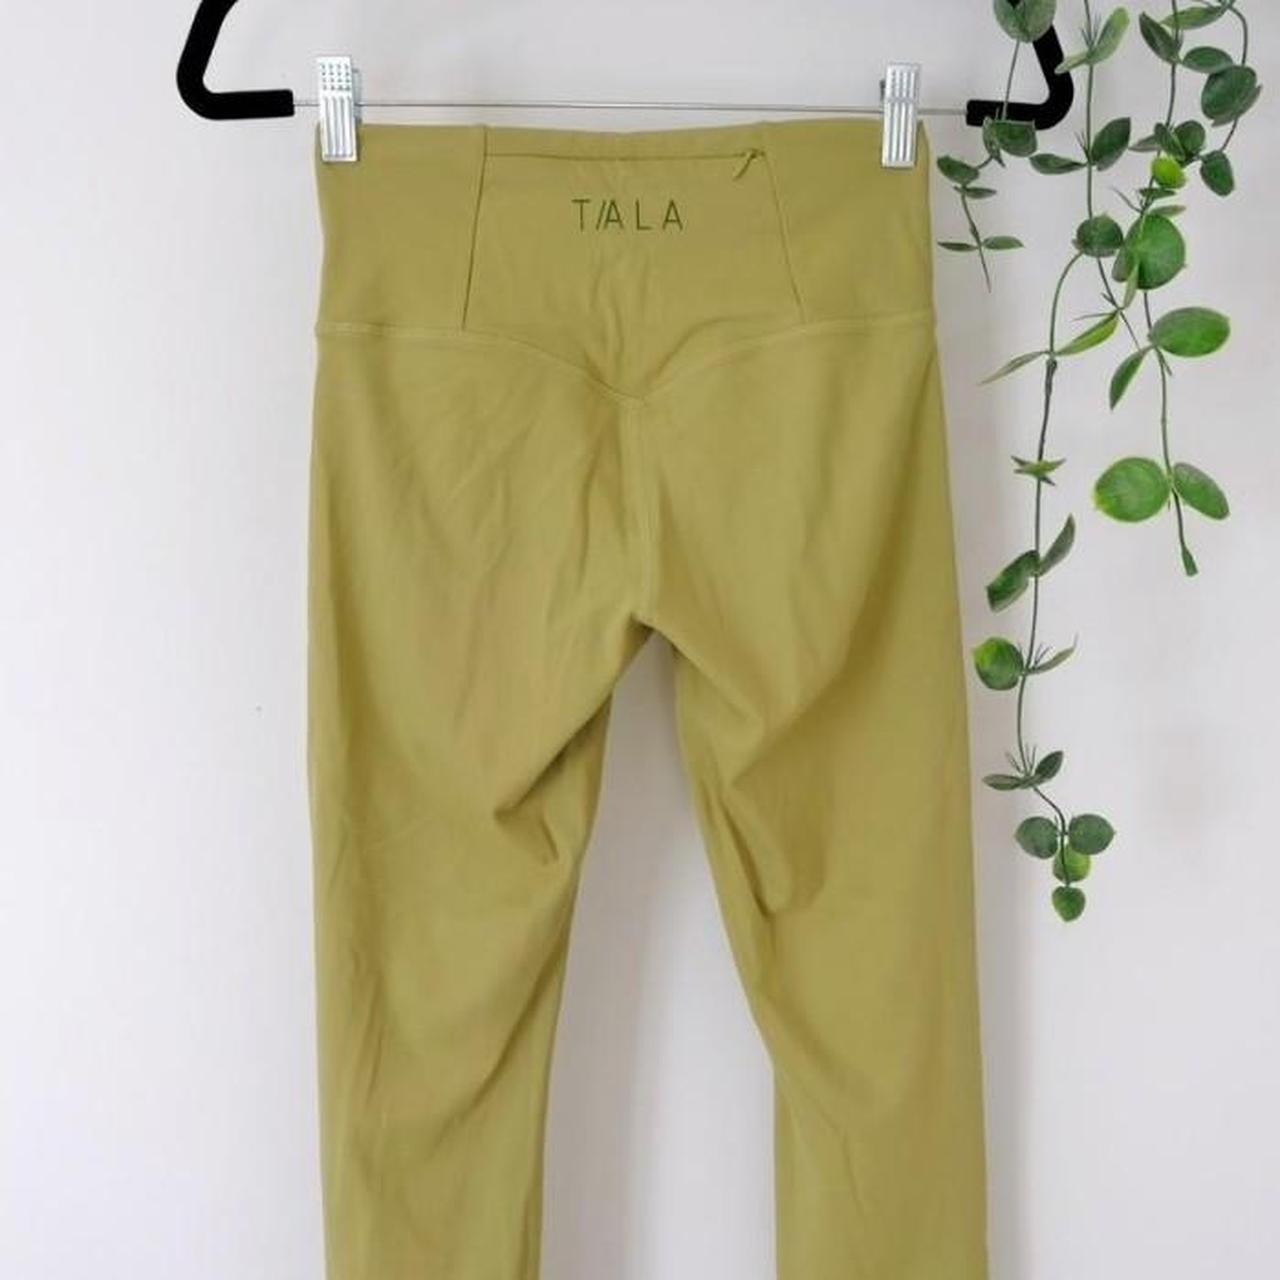 TALA Skinluxe leggings in Cedar Green (no longer